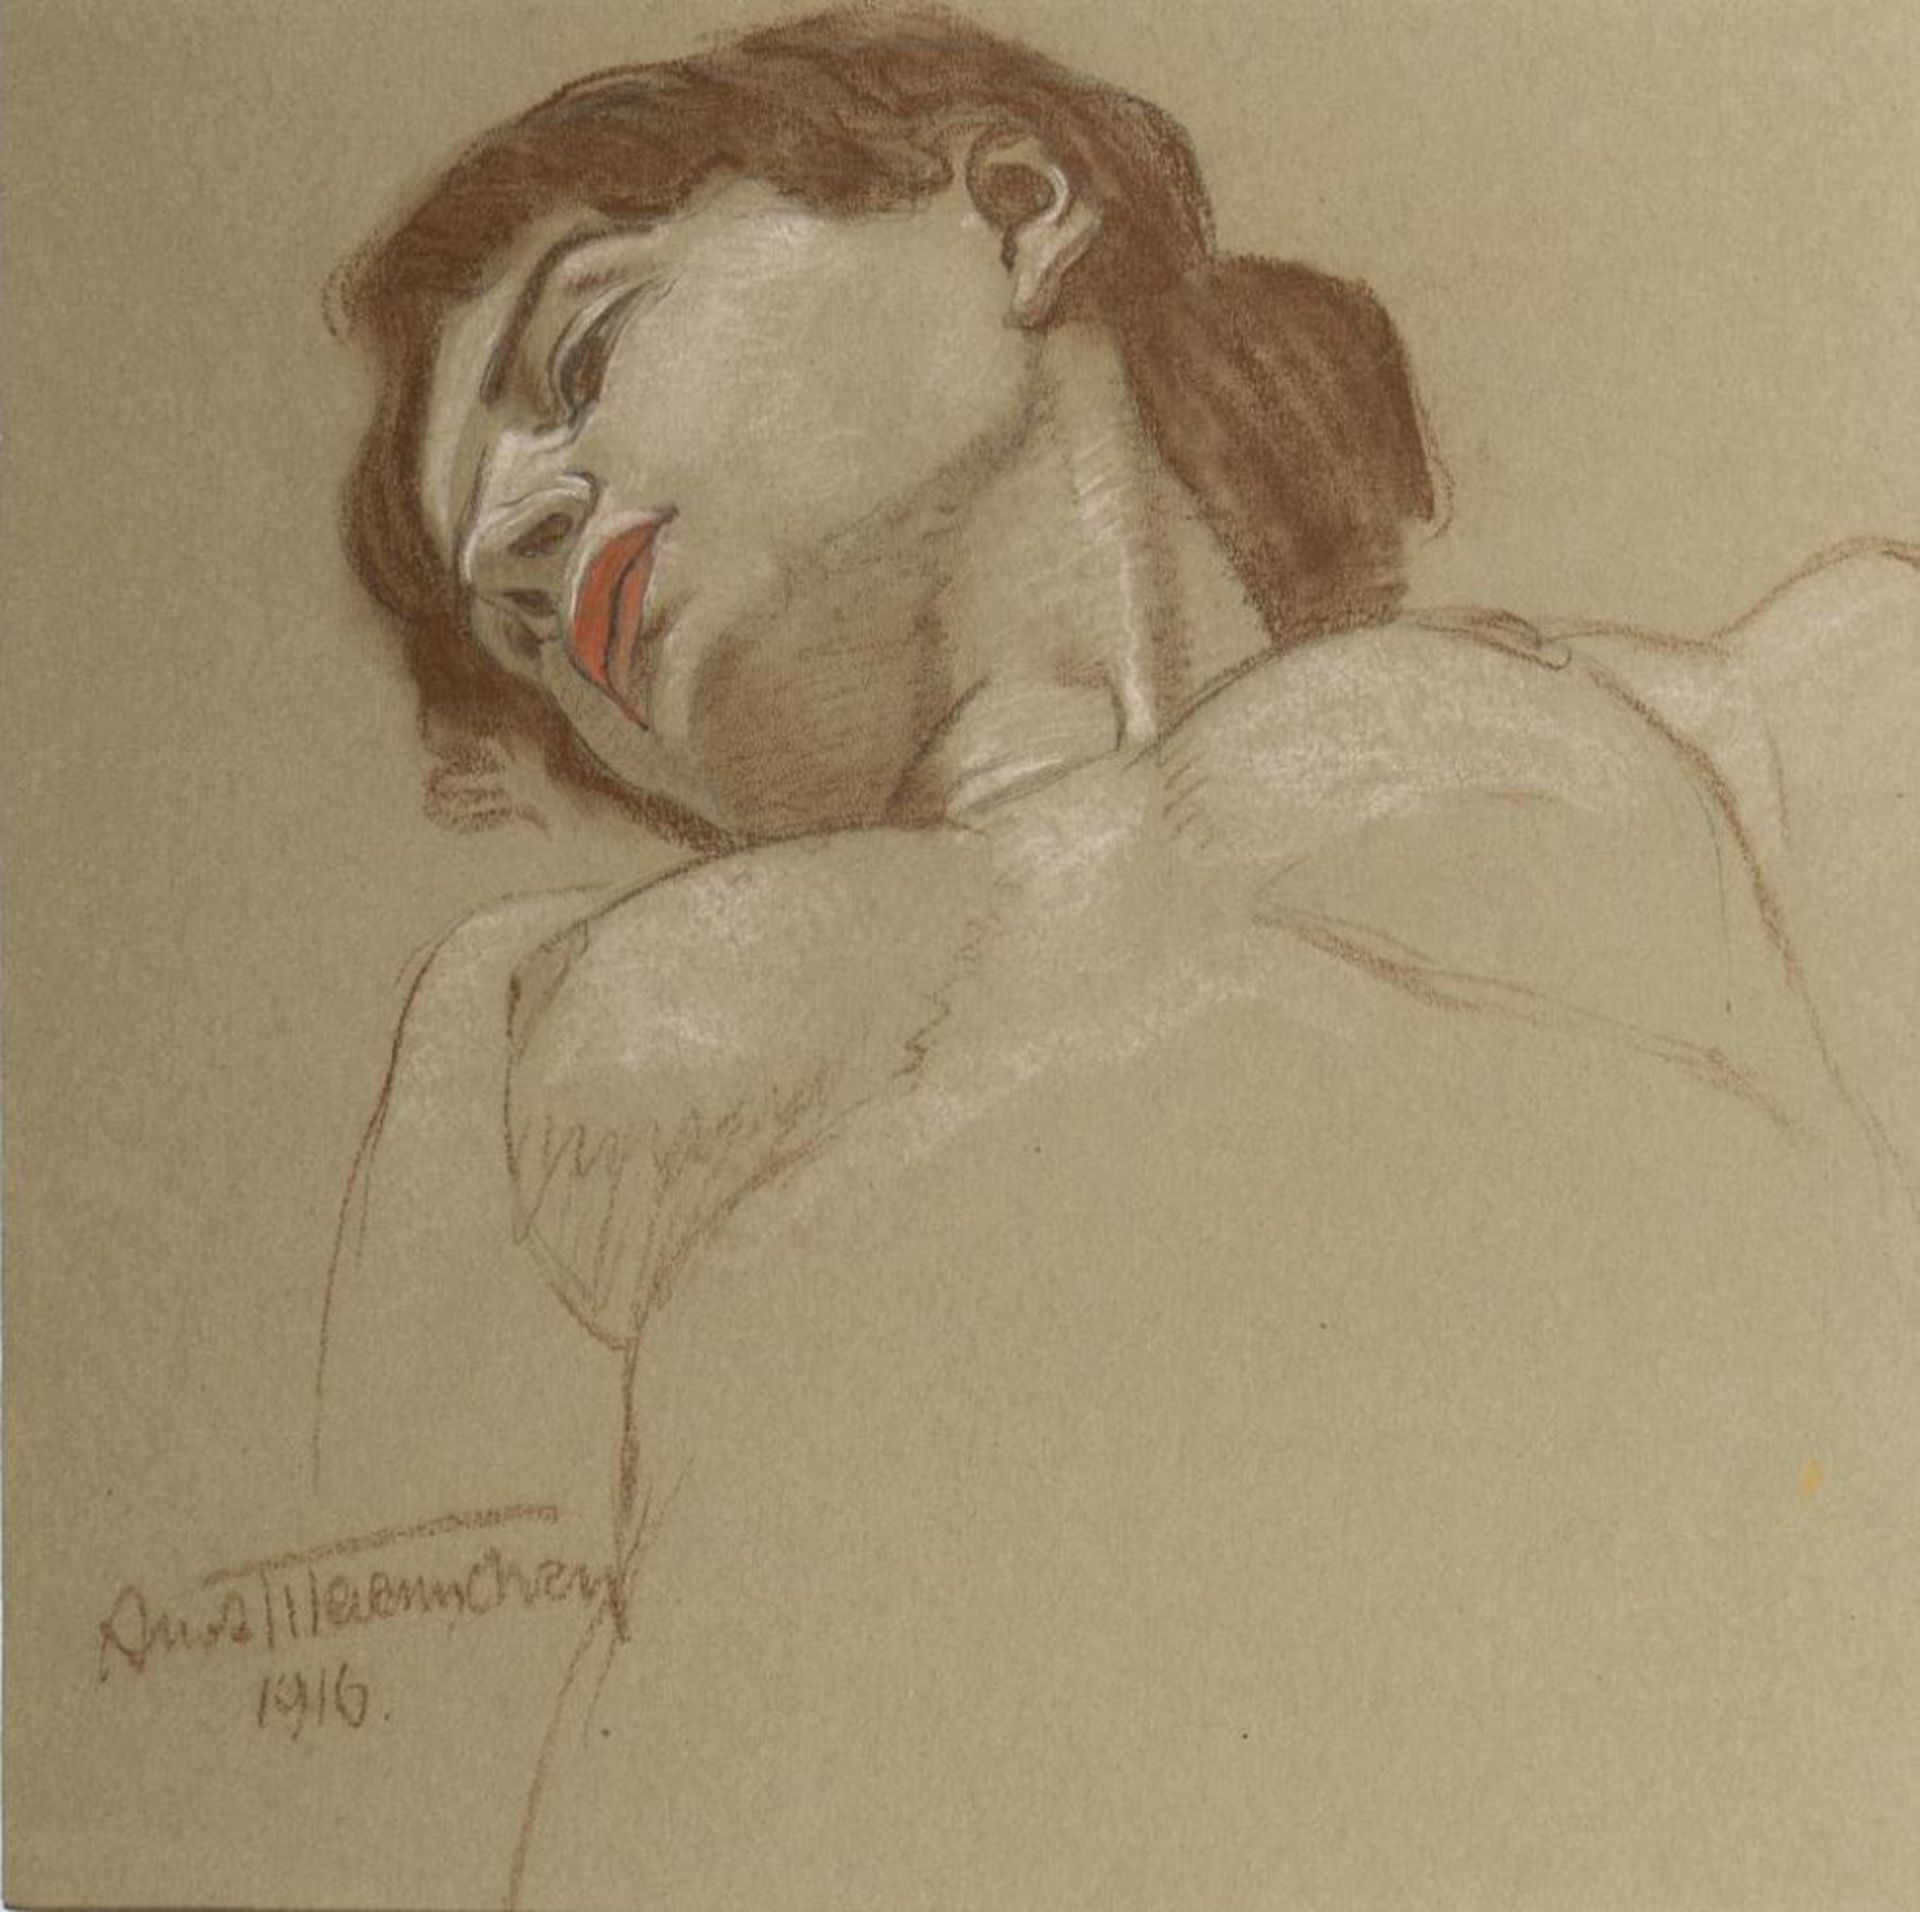 MAENNCHEN, Albert (1873 Rudolstadt - 1935 Berlin). Kopf- und Brustbereich eines weiblichen Aktes.